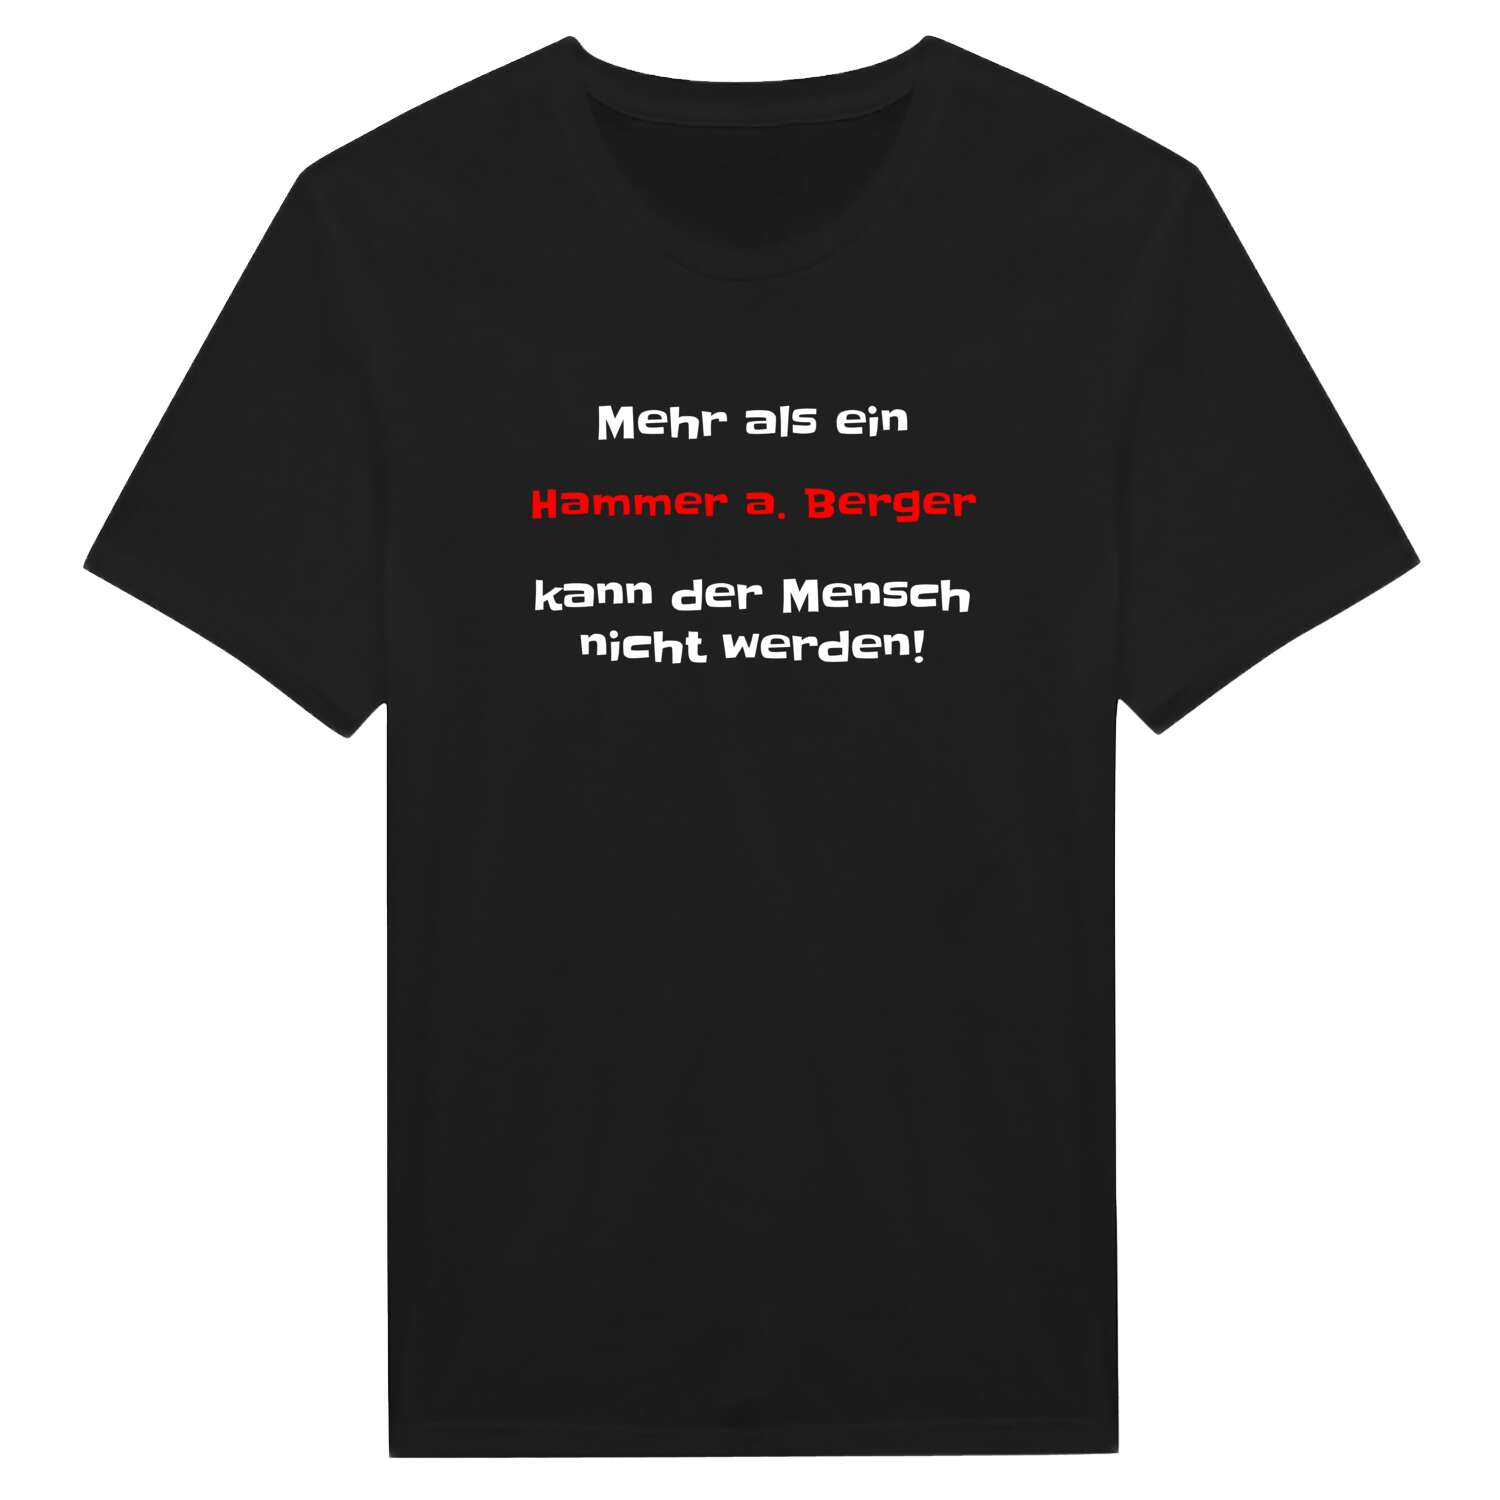 Hammer a. Berg T-Shirt »Mehr als ein«